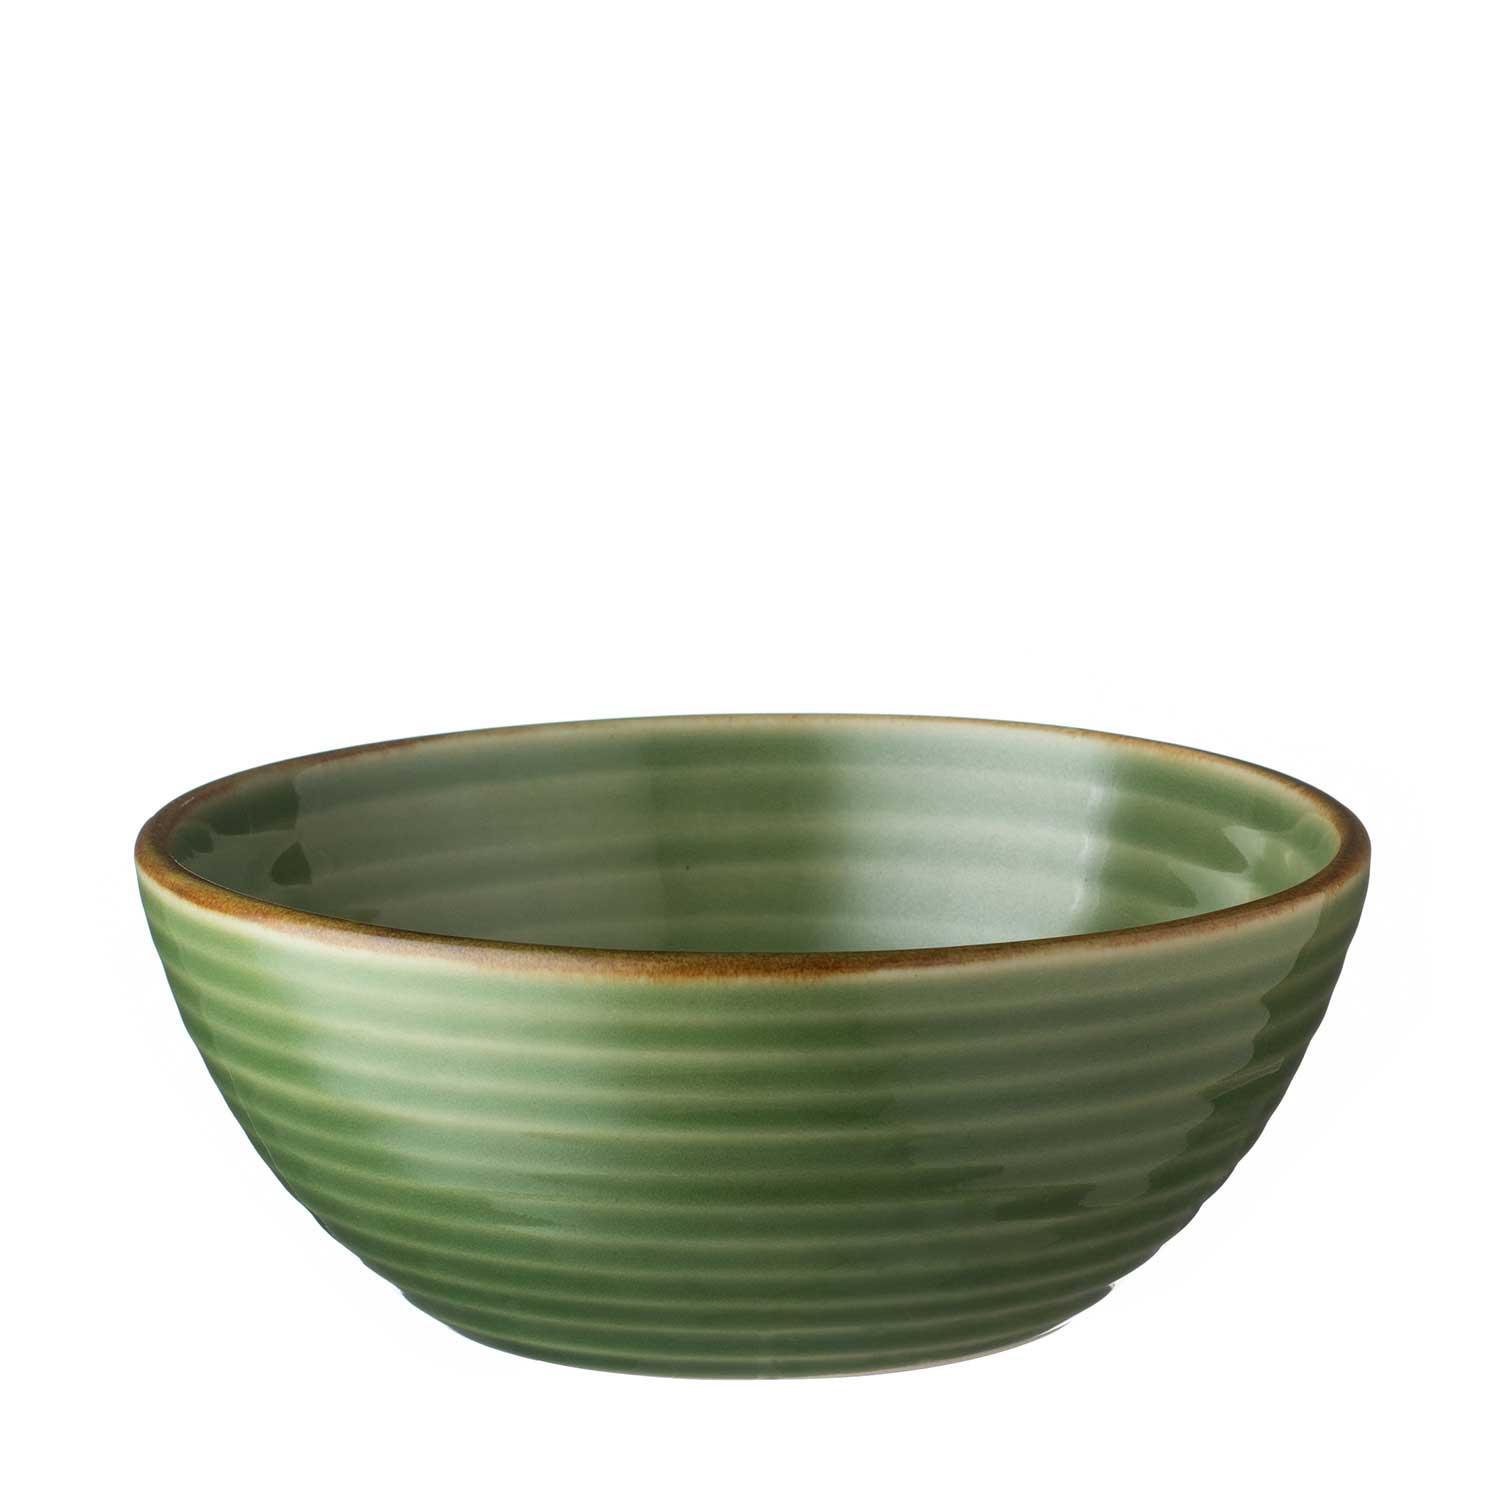 Lines Soup Bowl Green Gloss With Brown Rim - Jenggala Keramik Bali - Ceramic